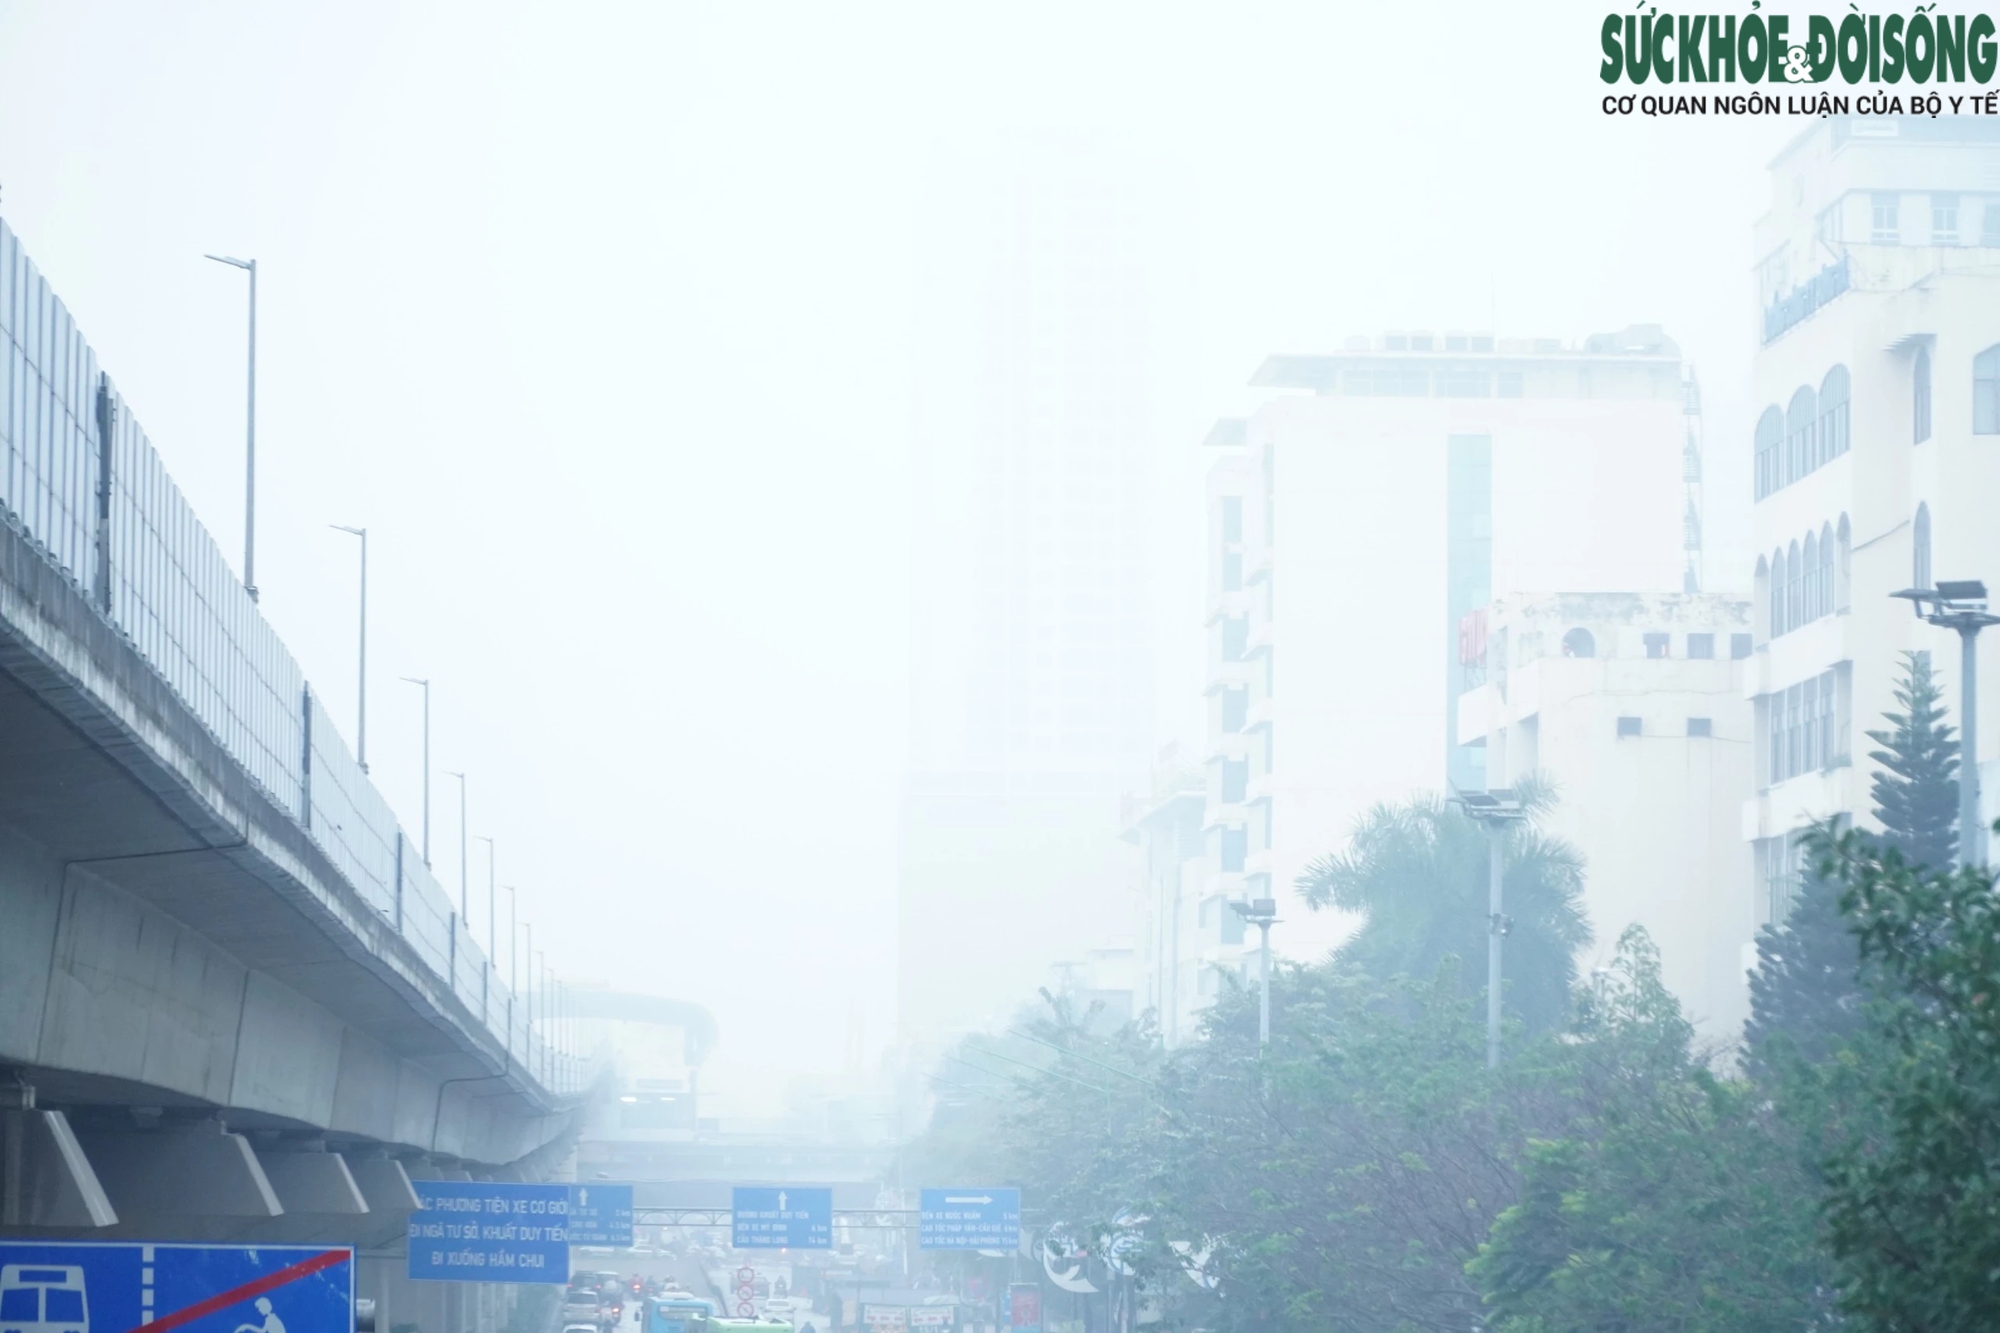 Mưa lạnh, sương mù 'nuốt chửng' loạt tòa chung cư cao tầng ở Hà Nội- Ảnh 2.